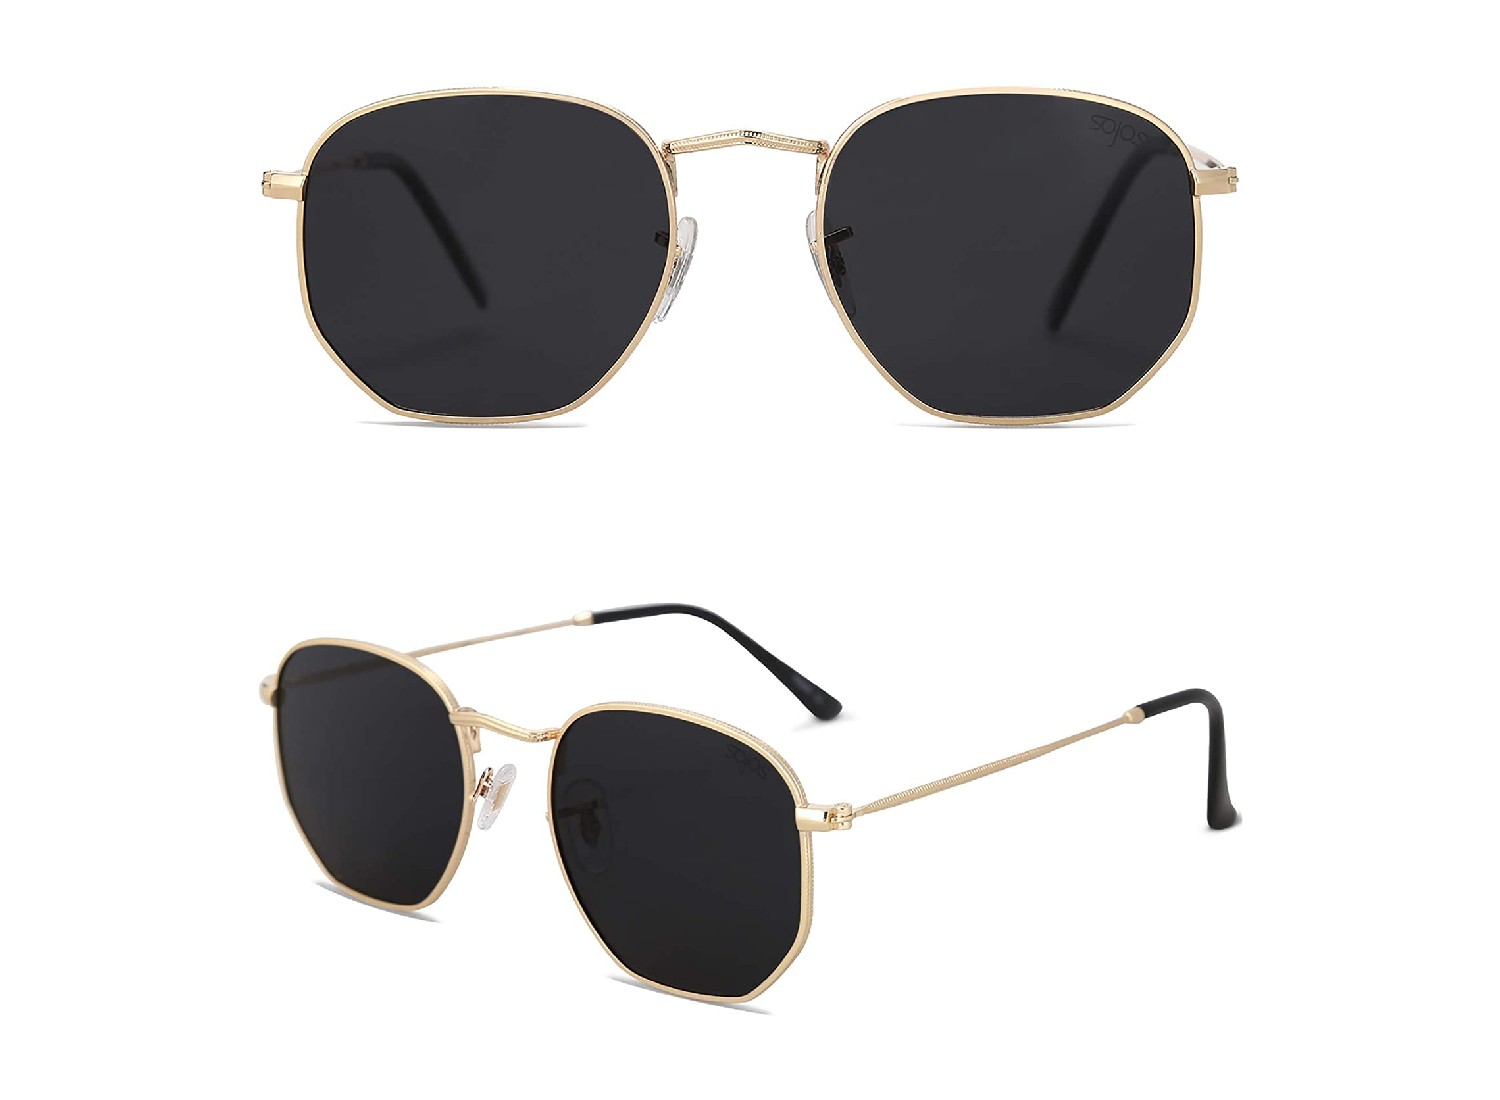 Sepasang kacamata hitam dengan bingkai emas ditampilkan dari dua sudut yang berbeda.